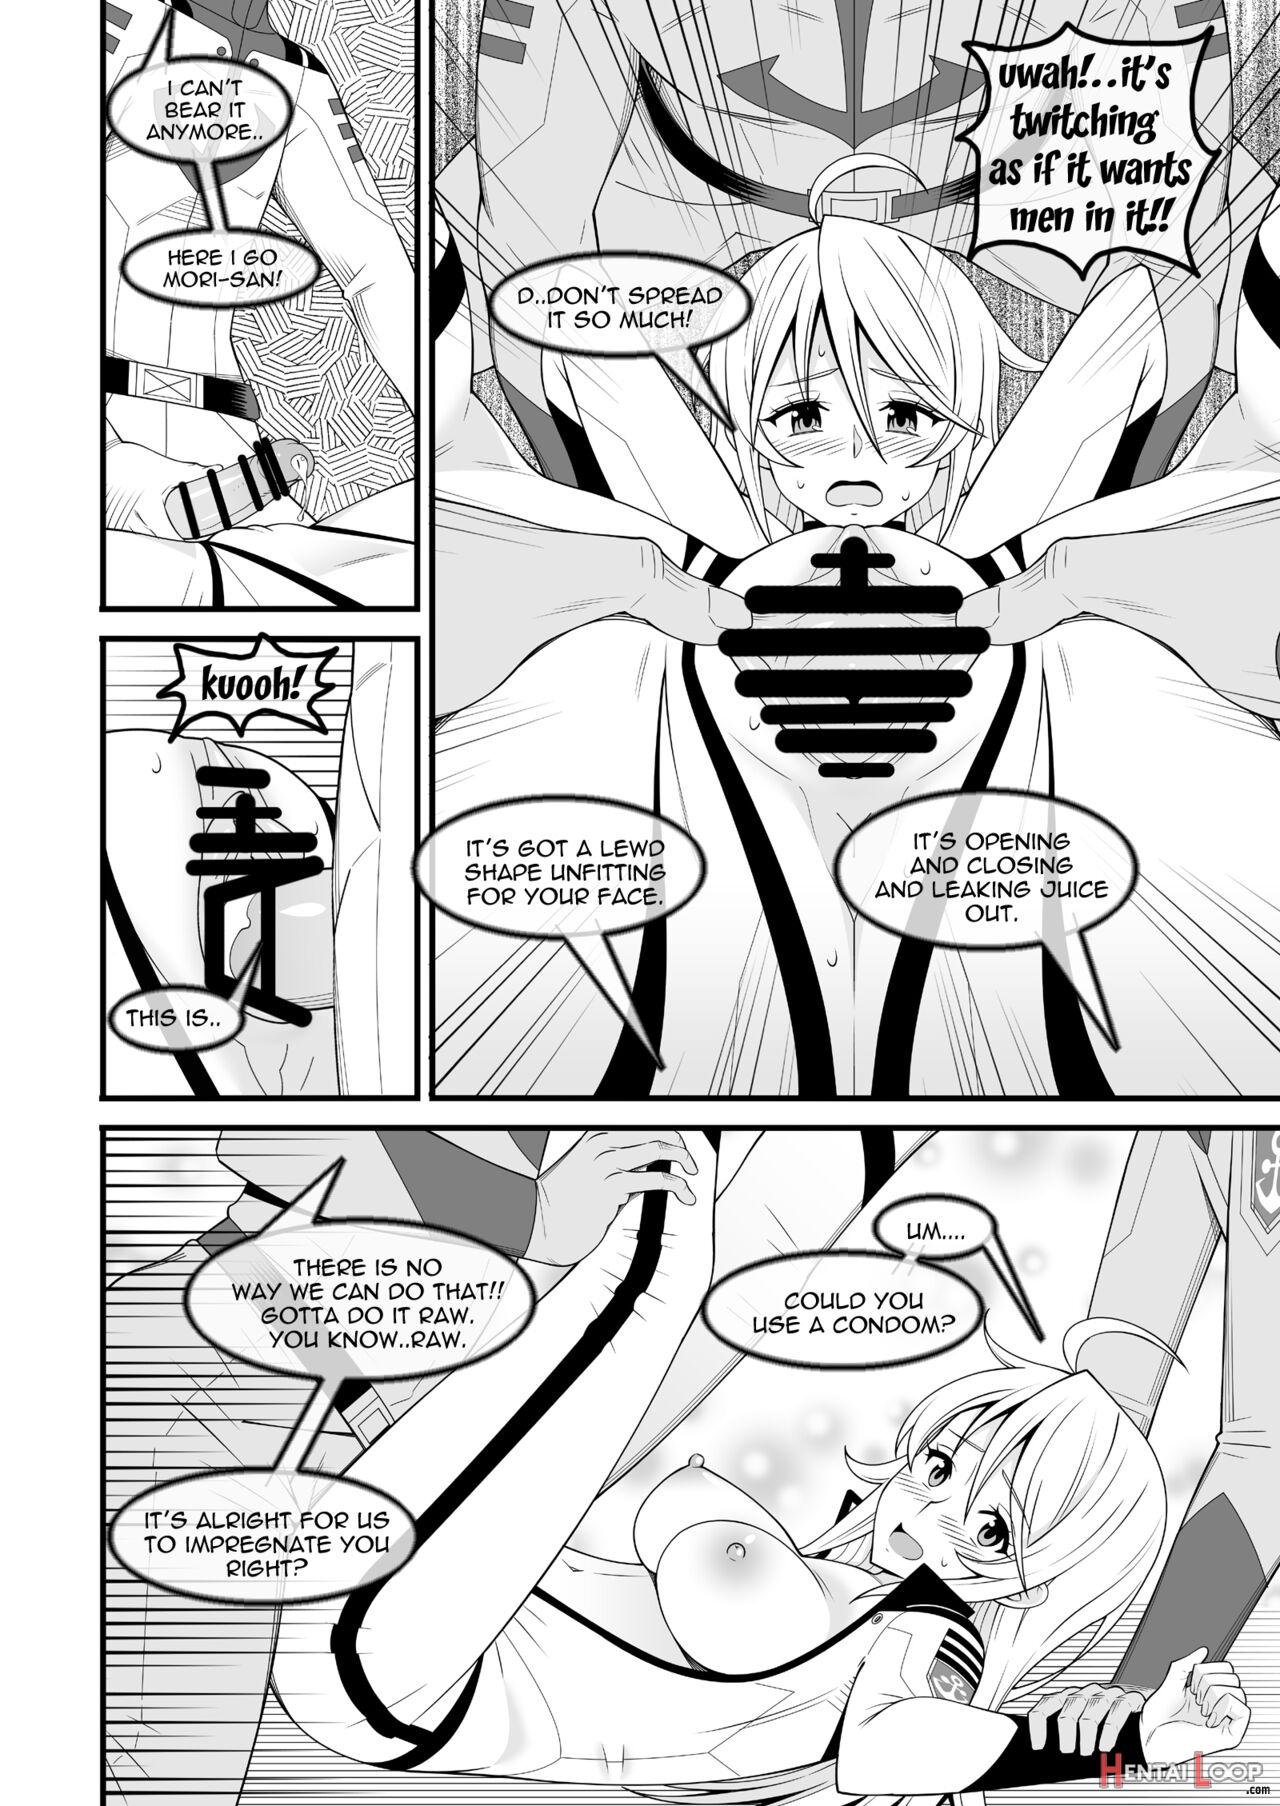 Yamato's Beauty page 7